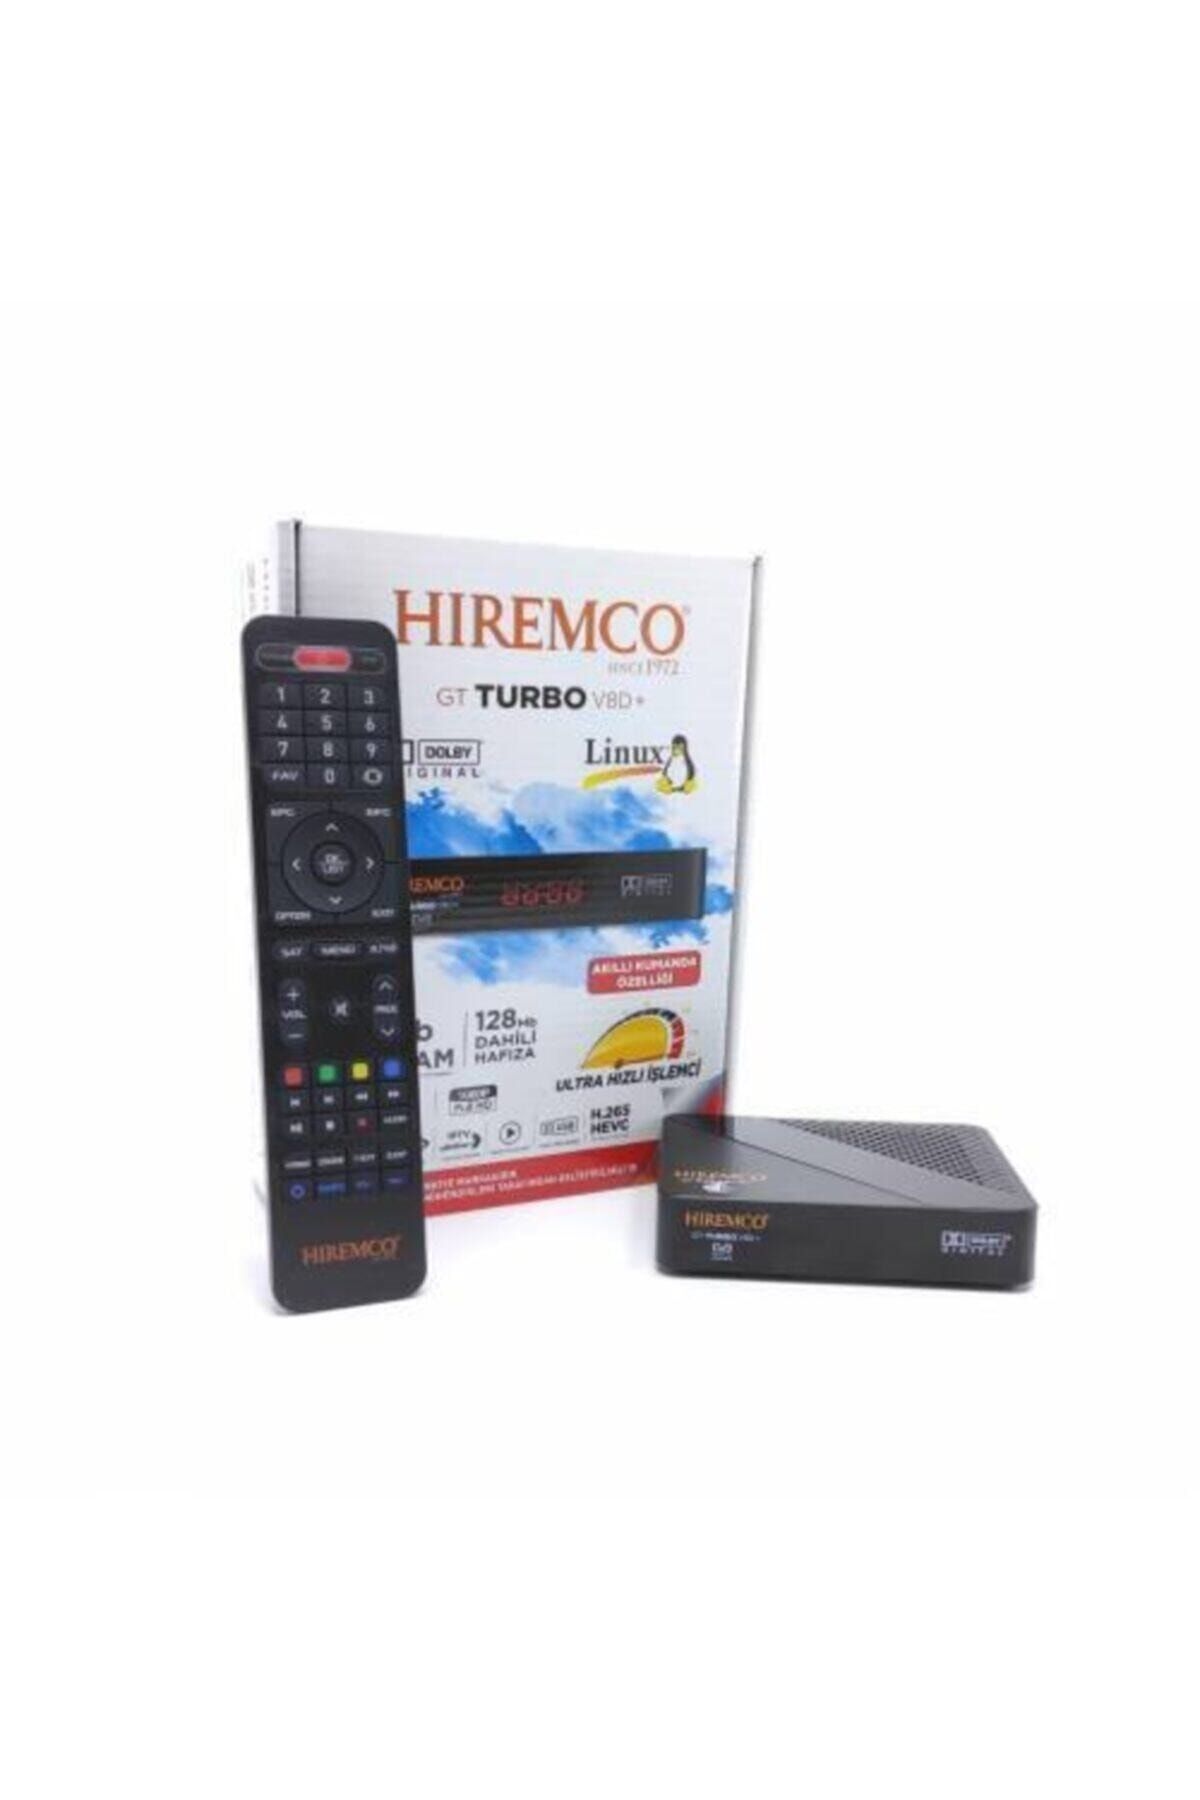 Hiremco Gt Turbo V8d Plus Wıfı Canaklı Canaksız Sınırsız Tv Paketi Uydu Alıcısı